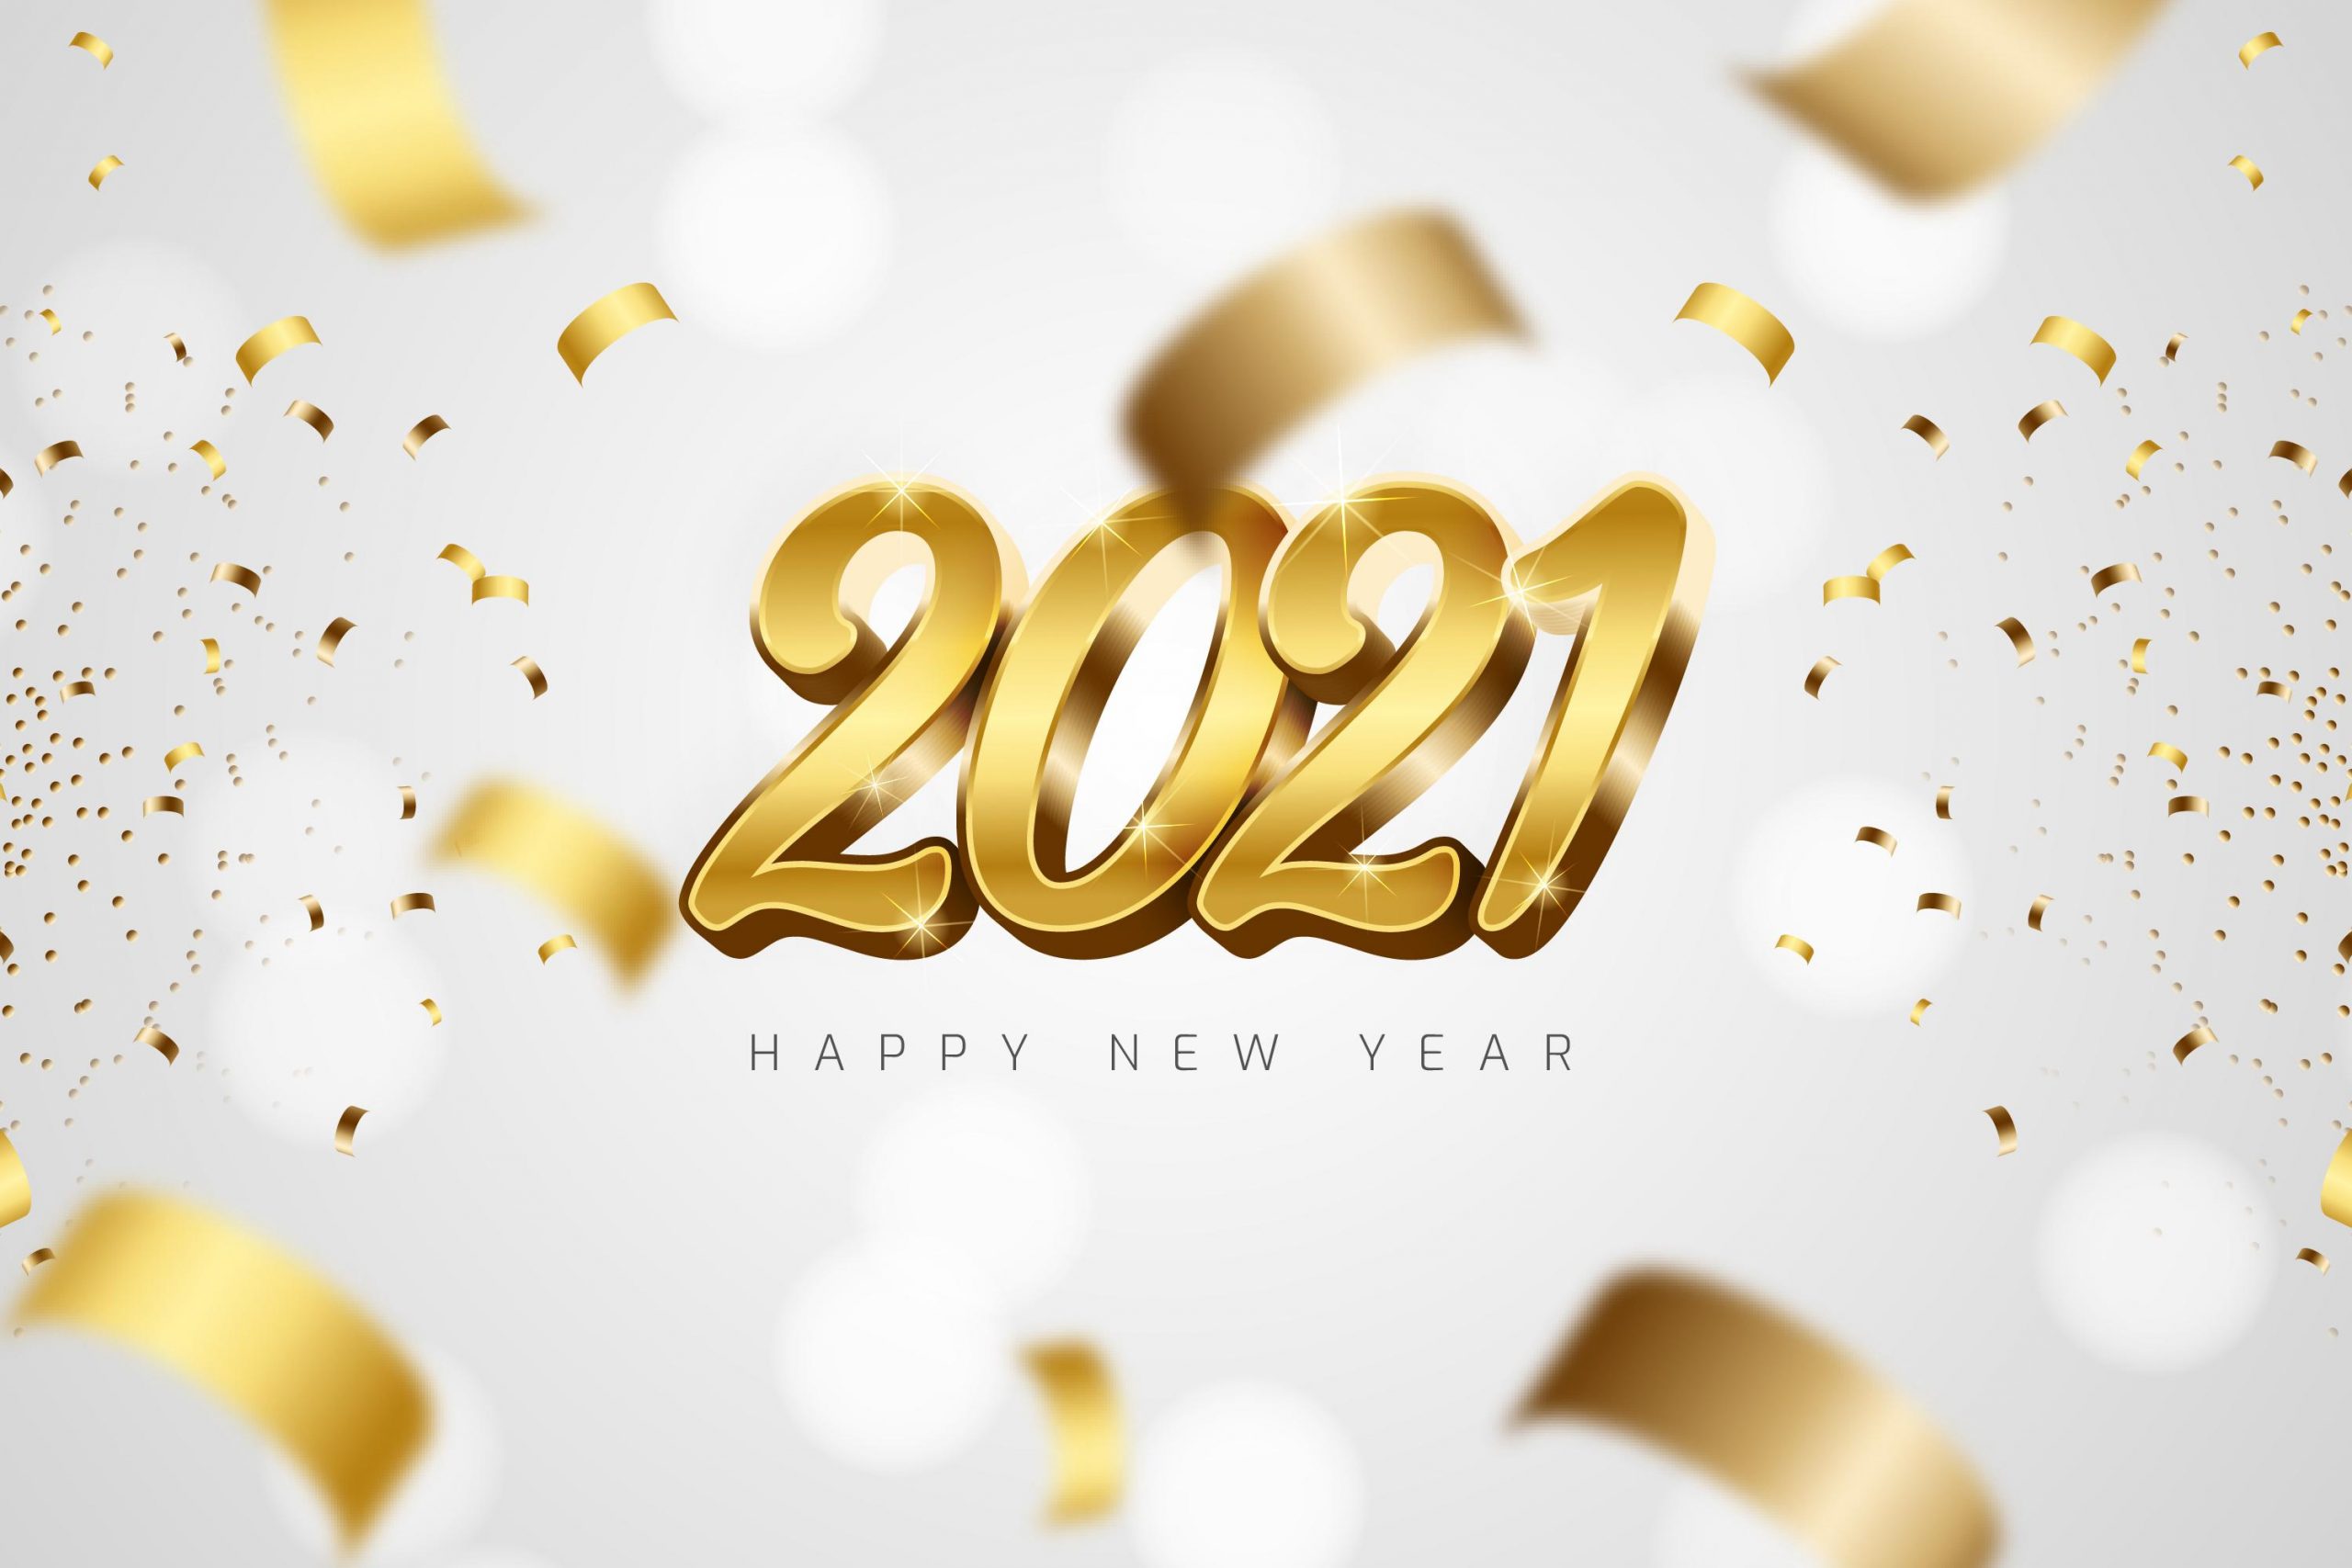 Phông nền, hình nền background đẹp cho tết 2022 - chúc mừng năm mới